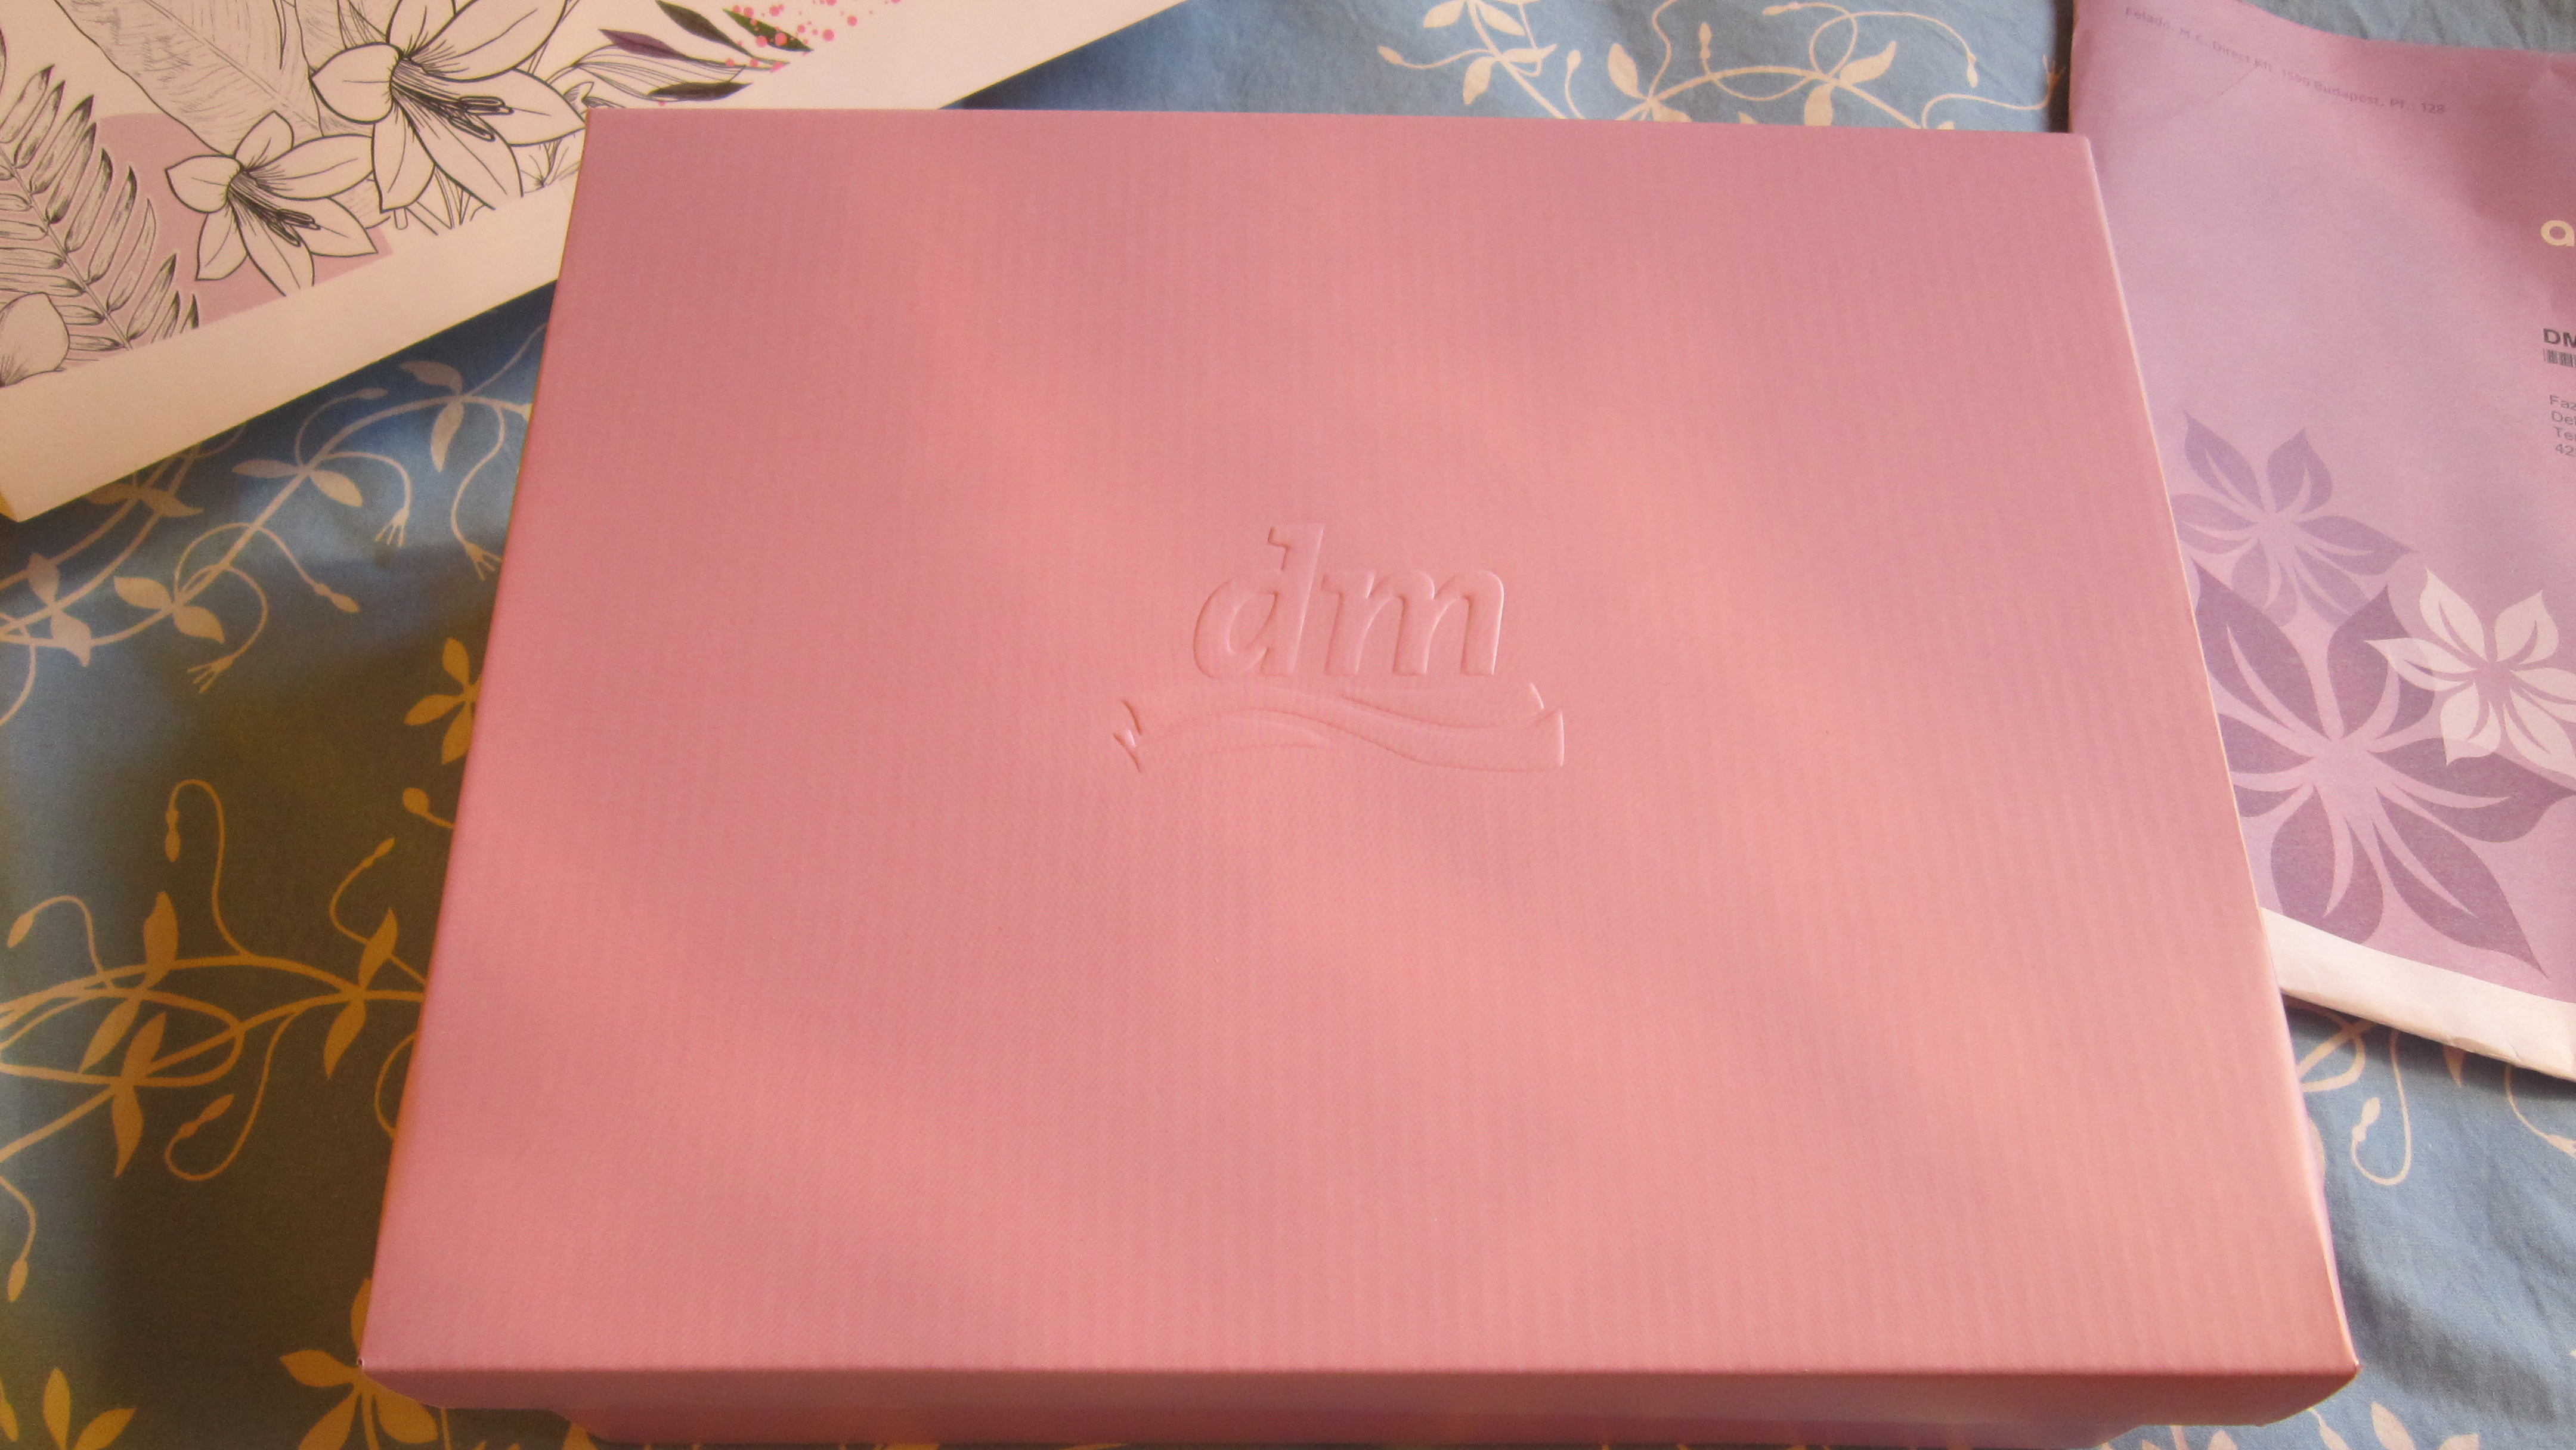 A nagy dobozban kisebb doboz dombornyomott DM logóval; tisztára mint egy matrjoska baba. :)